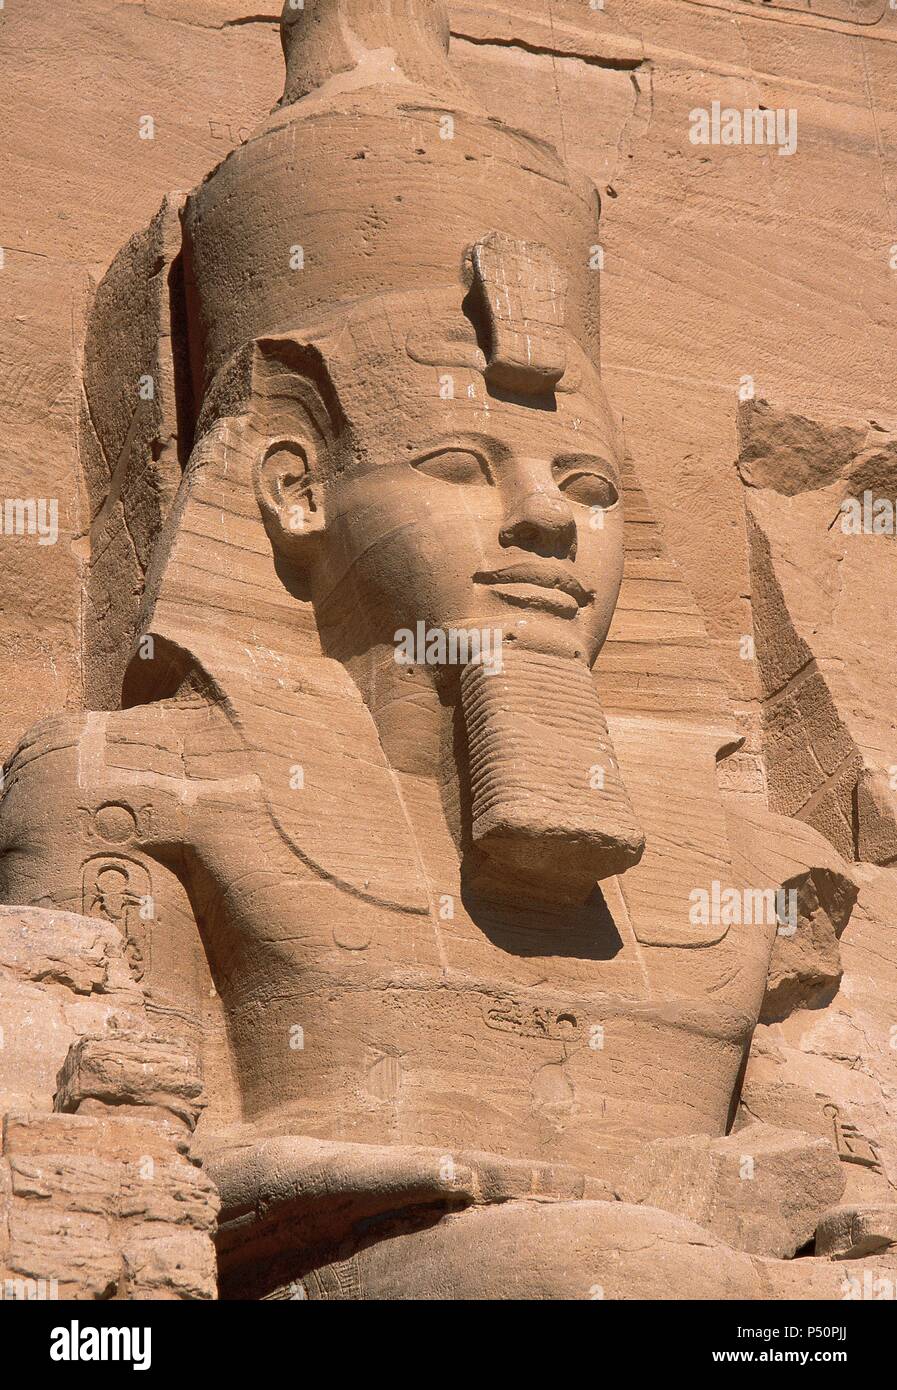 ARTE EGIPCIO. EGIPTO. COLOSO de la fachada del Templo de Ramsés II (templo mayor). Representa al faraón sentado, con el nemes en la cabeza, doble corona, las manos apoyadas en las caderas y rostro sonriente. Abu Simbel. Stock Photo